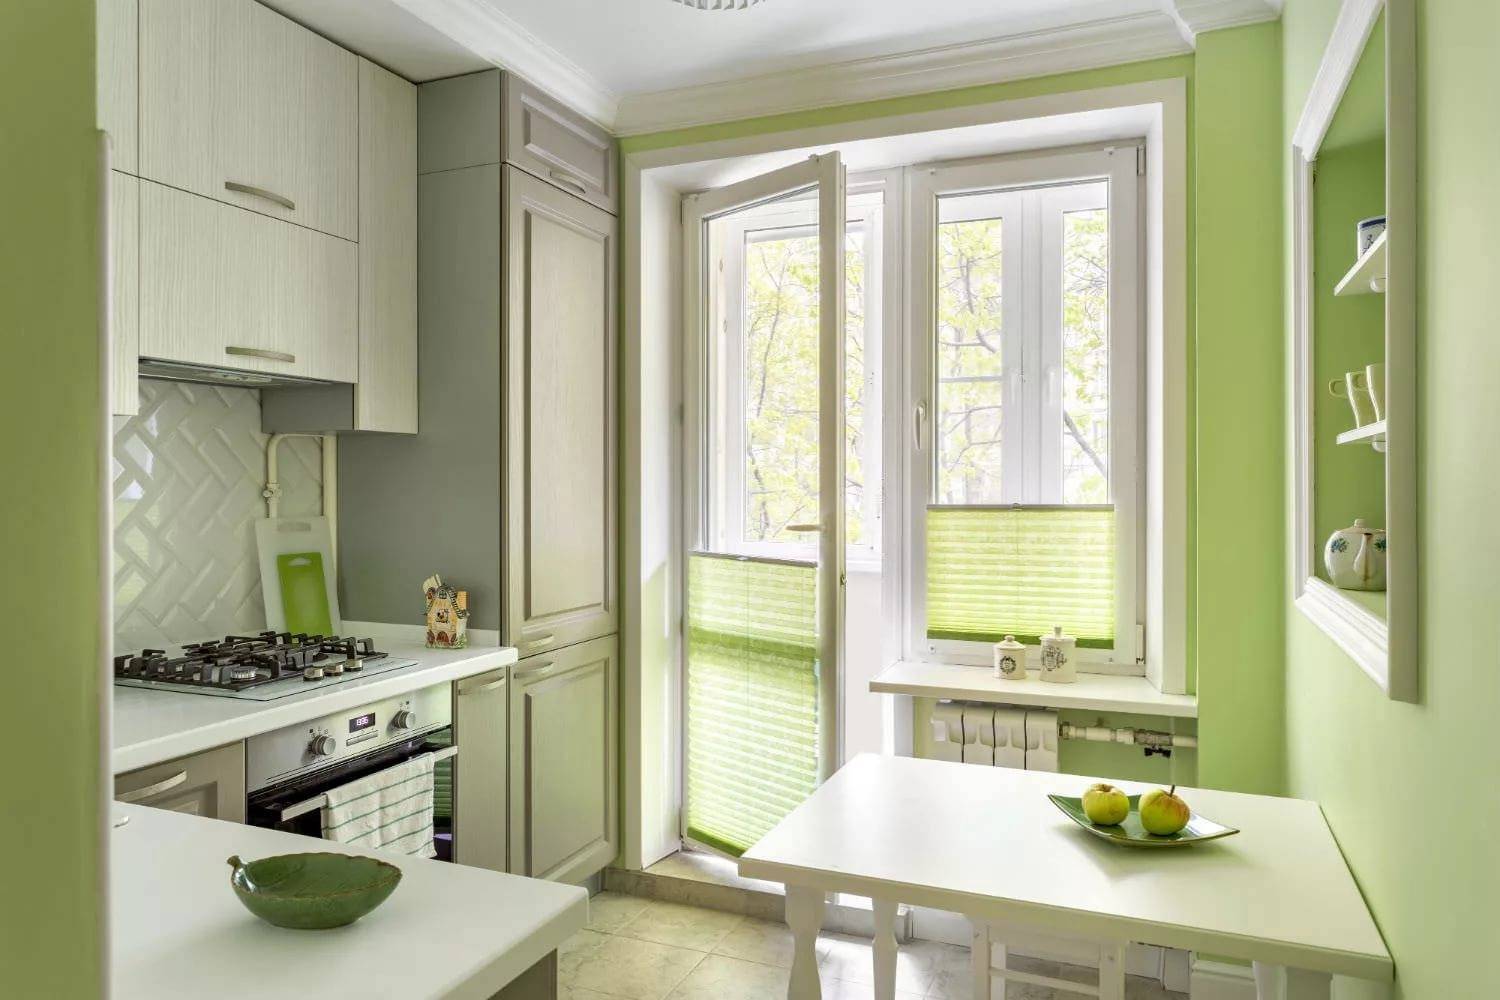 Дизайн кухни 6 кв м с холодильником и плитой (панелью): 37 реальных фото